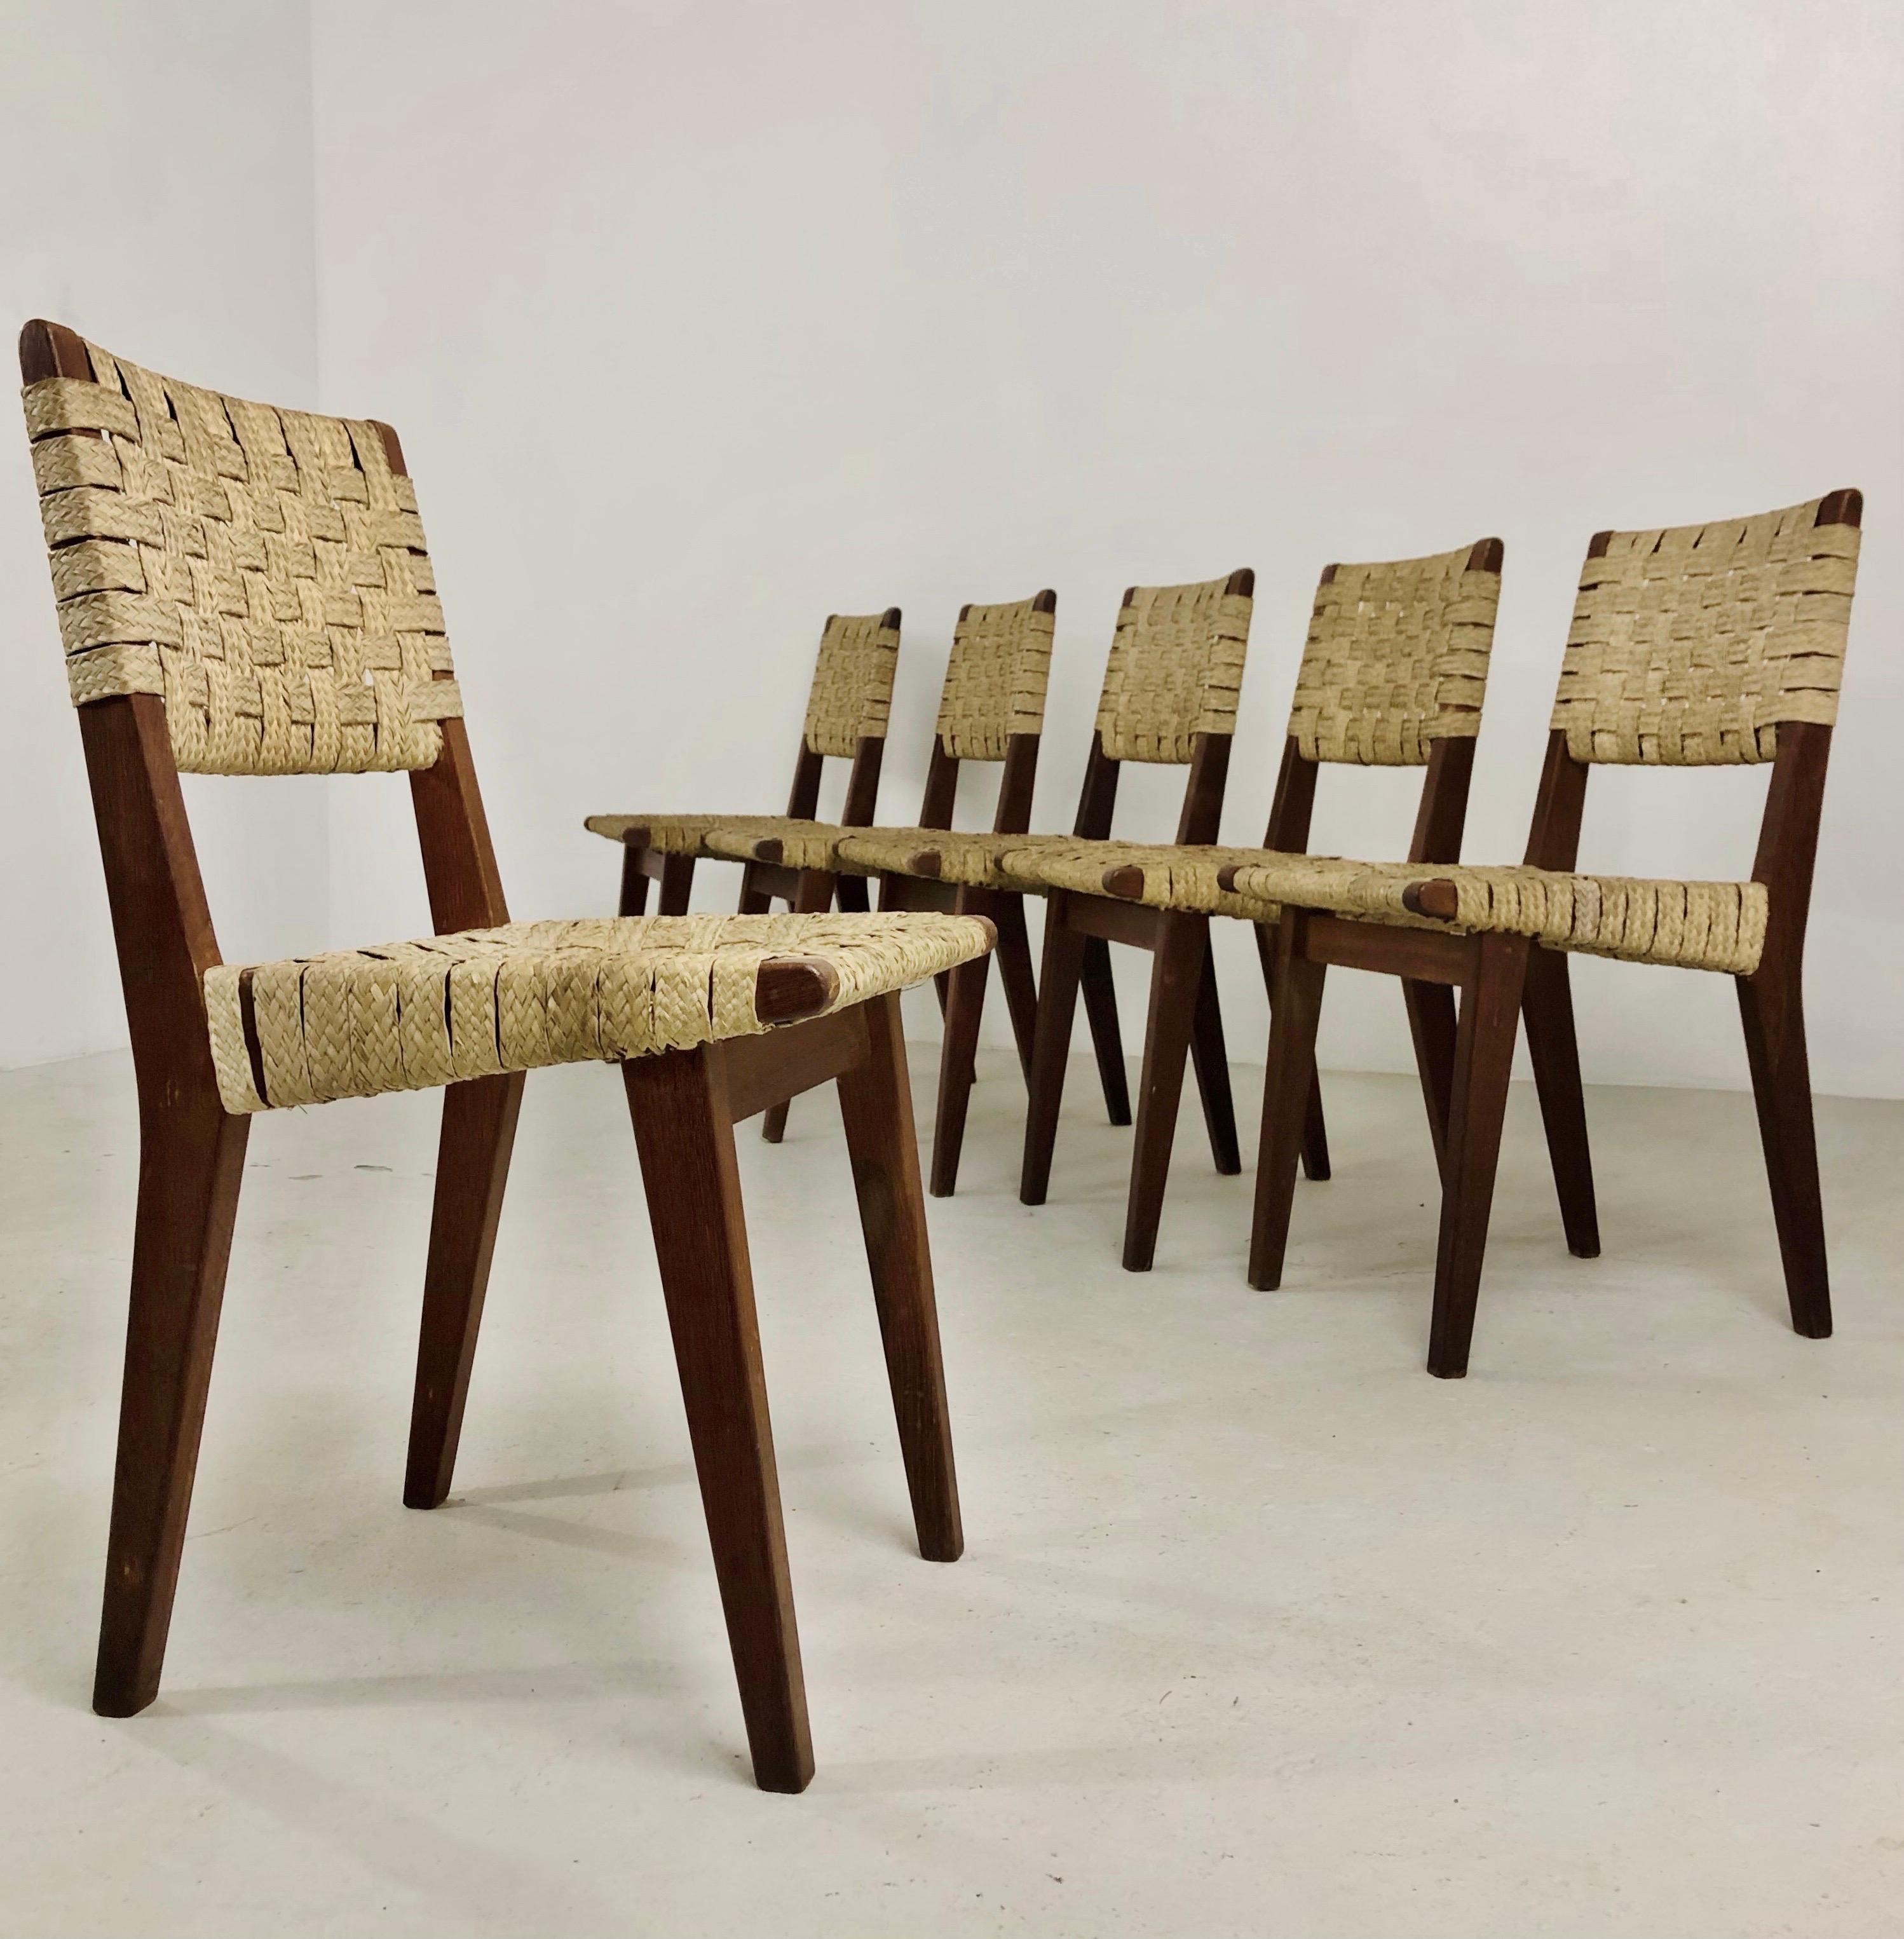 Set aus sechs Stühlen, entworfen von Jens Risom. Das älteste Modell besteht aus massivem Eichenholz und natürlichem Schilfgeflecht für die Rückenlehne und den Sitz. Die Stühle haben im Laufe der Zeit eine schöne Patina entwickelt, die ihren